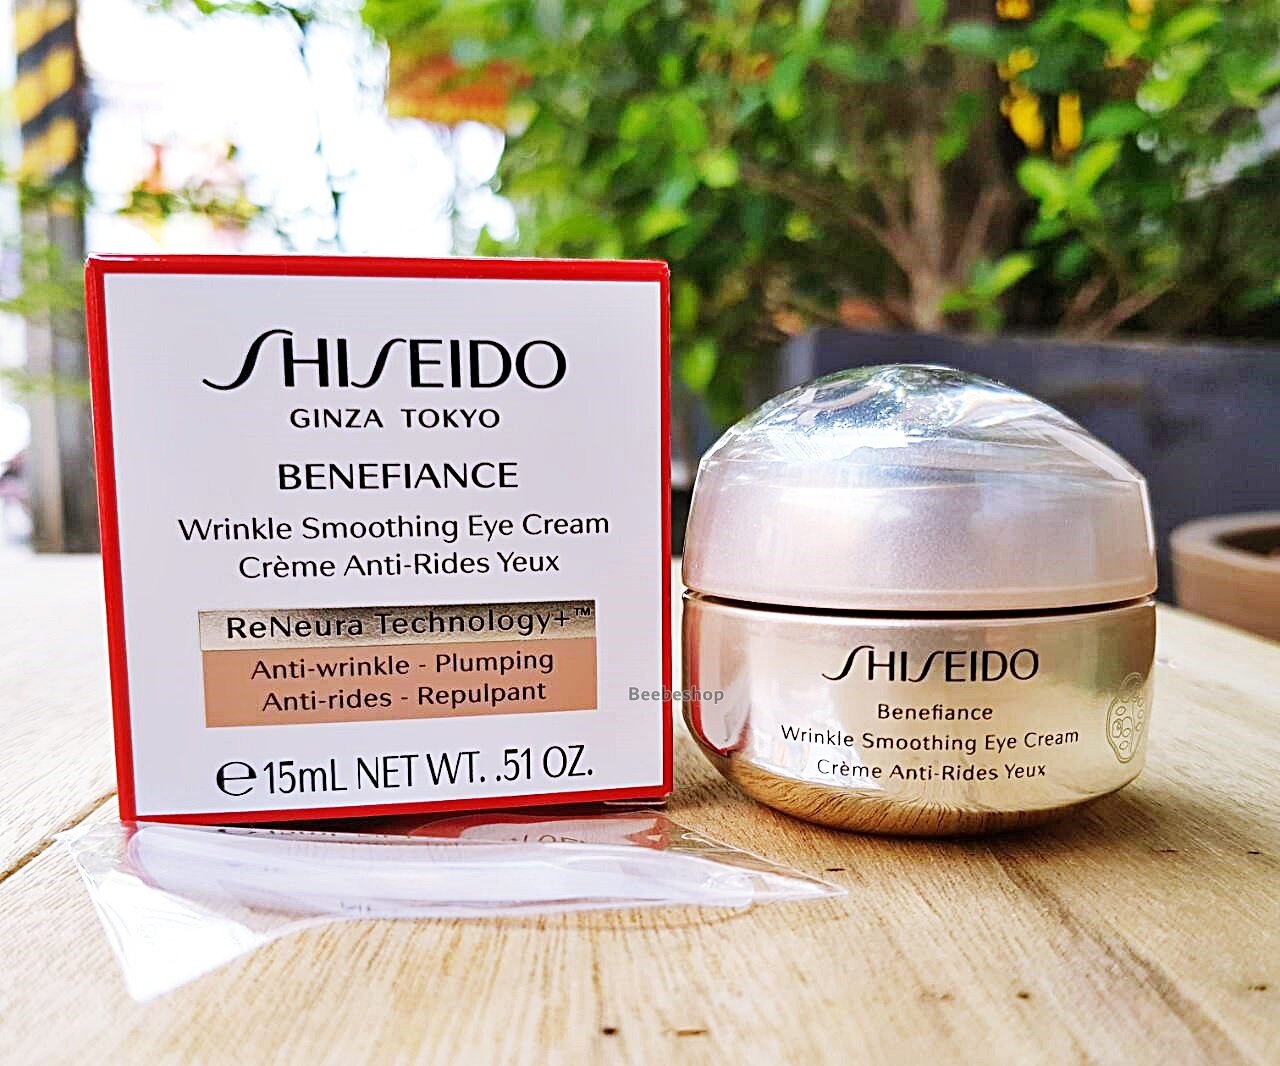 Shiseido wrinkle smoothing. Shiseido Benefiance Eye Cream. Shiseido Wrinkle Smoothing Cream. Shiseido Benefiance Wrinkle Smoothing Eye. Shiseido // крем Benefiance Wrinkle Smoothing Eye Cream 15ml.